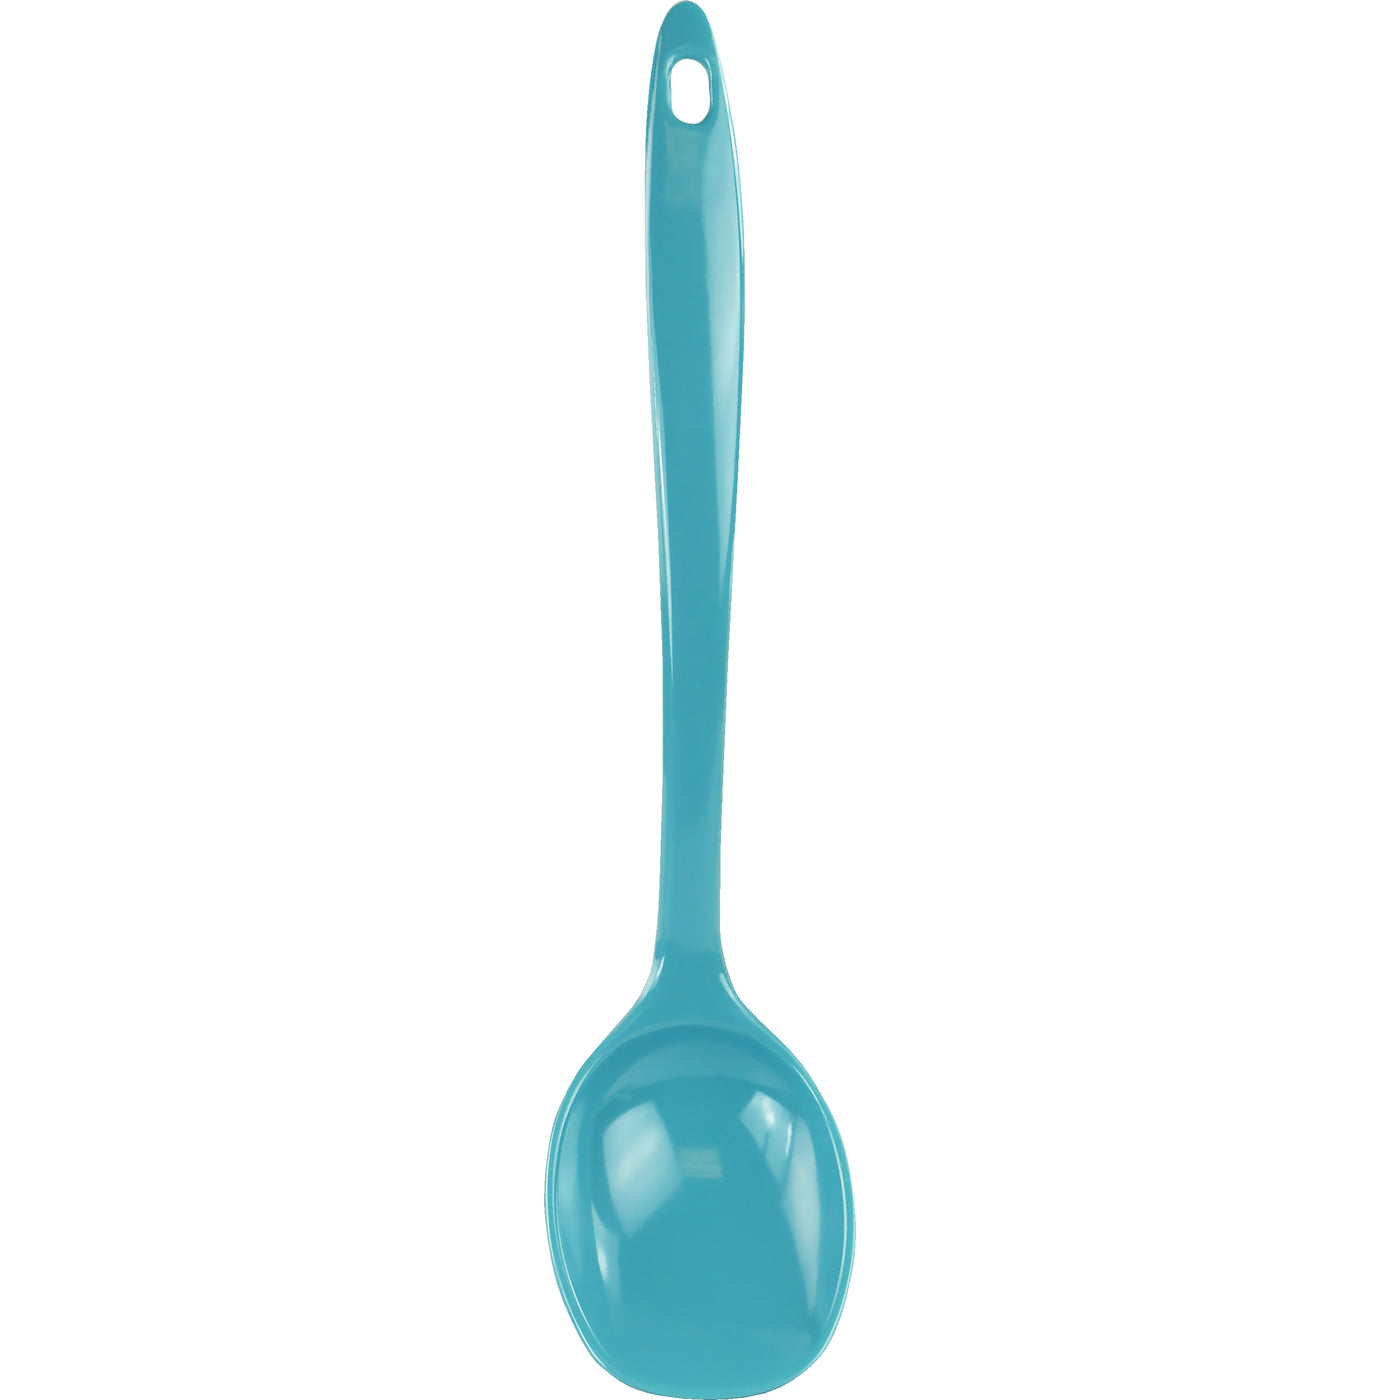 Reston Lloyd Melamine Slotted Spoon - Turquoise